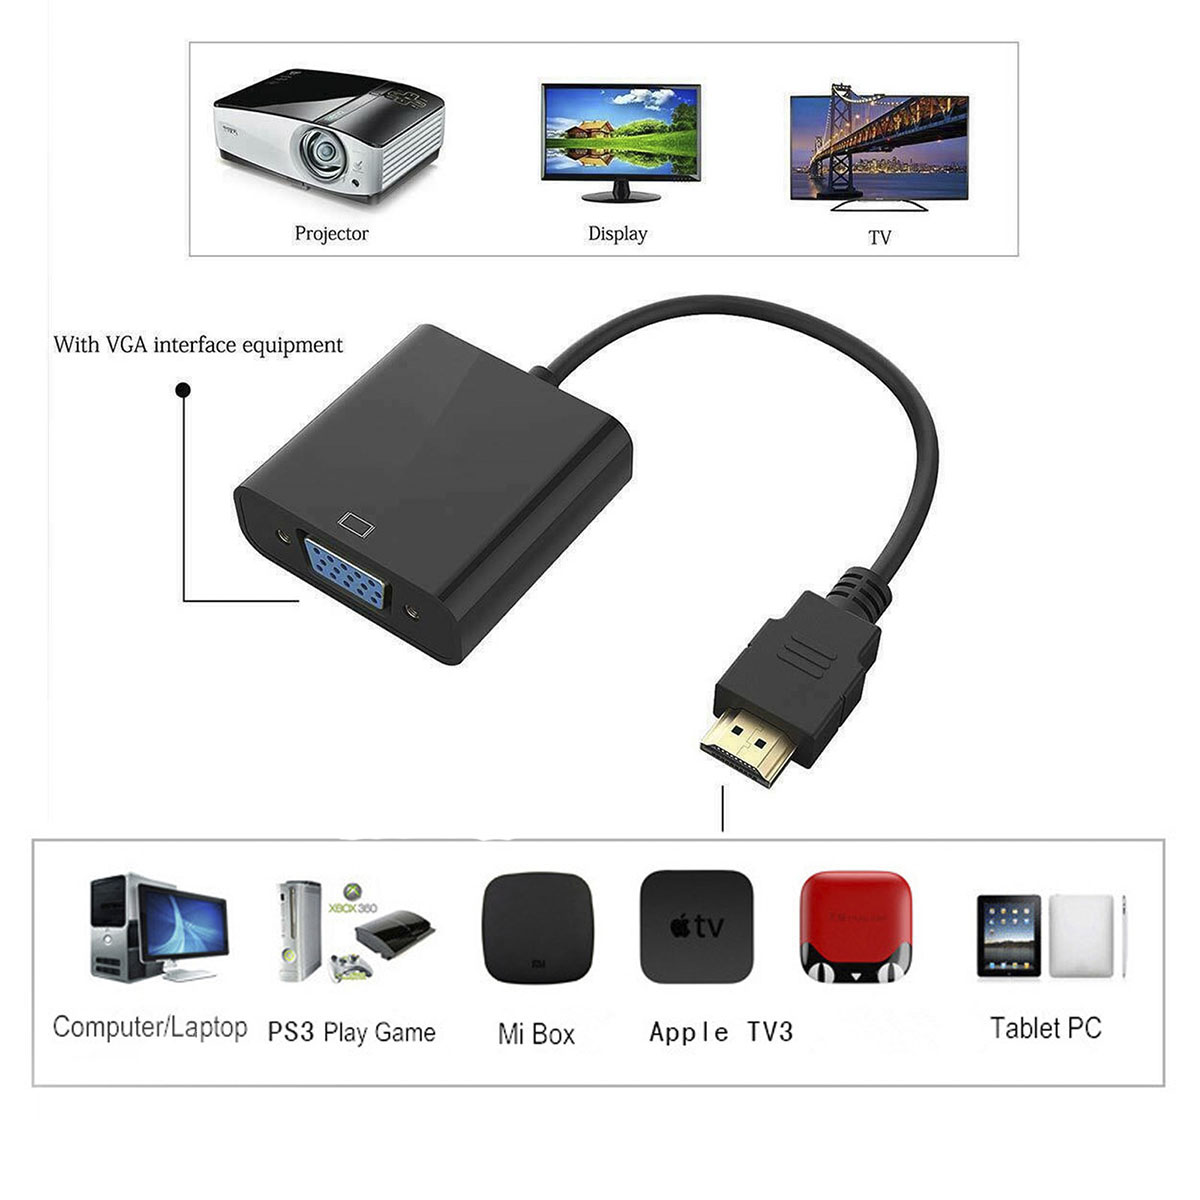 Переходник, адаптер, конвертер MRM HDMI на VGA (HDMI to VGA) + Aux разъем, кабель 15 см, цвет черный